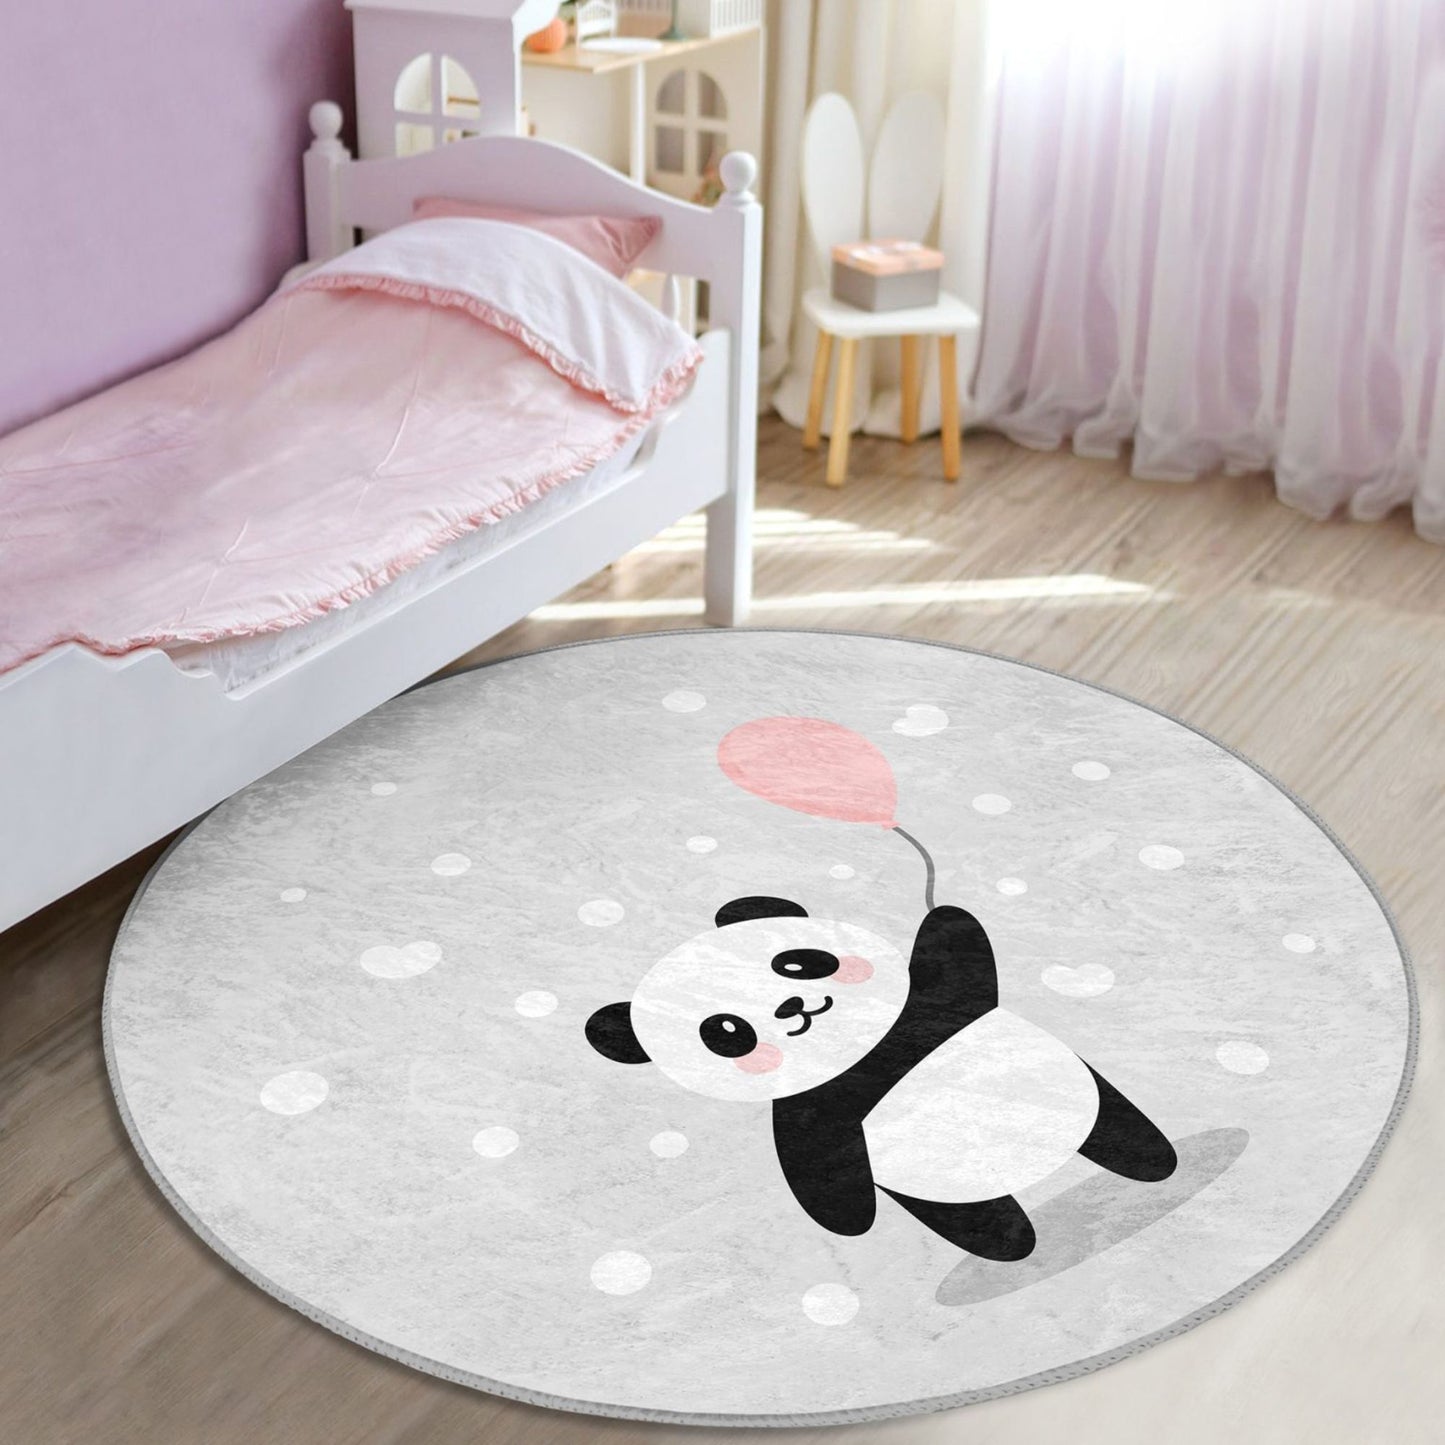 Elegant Nursery Rug with Panda Pattern